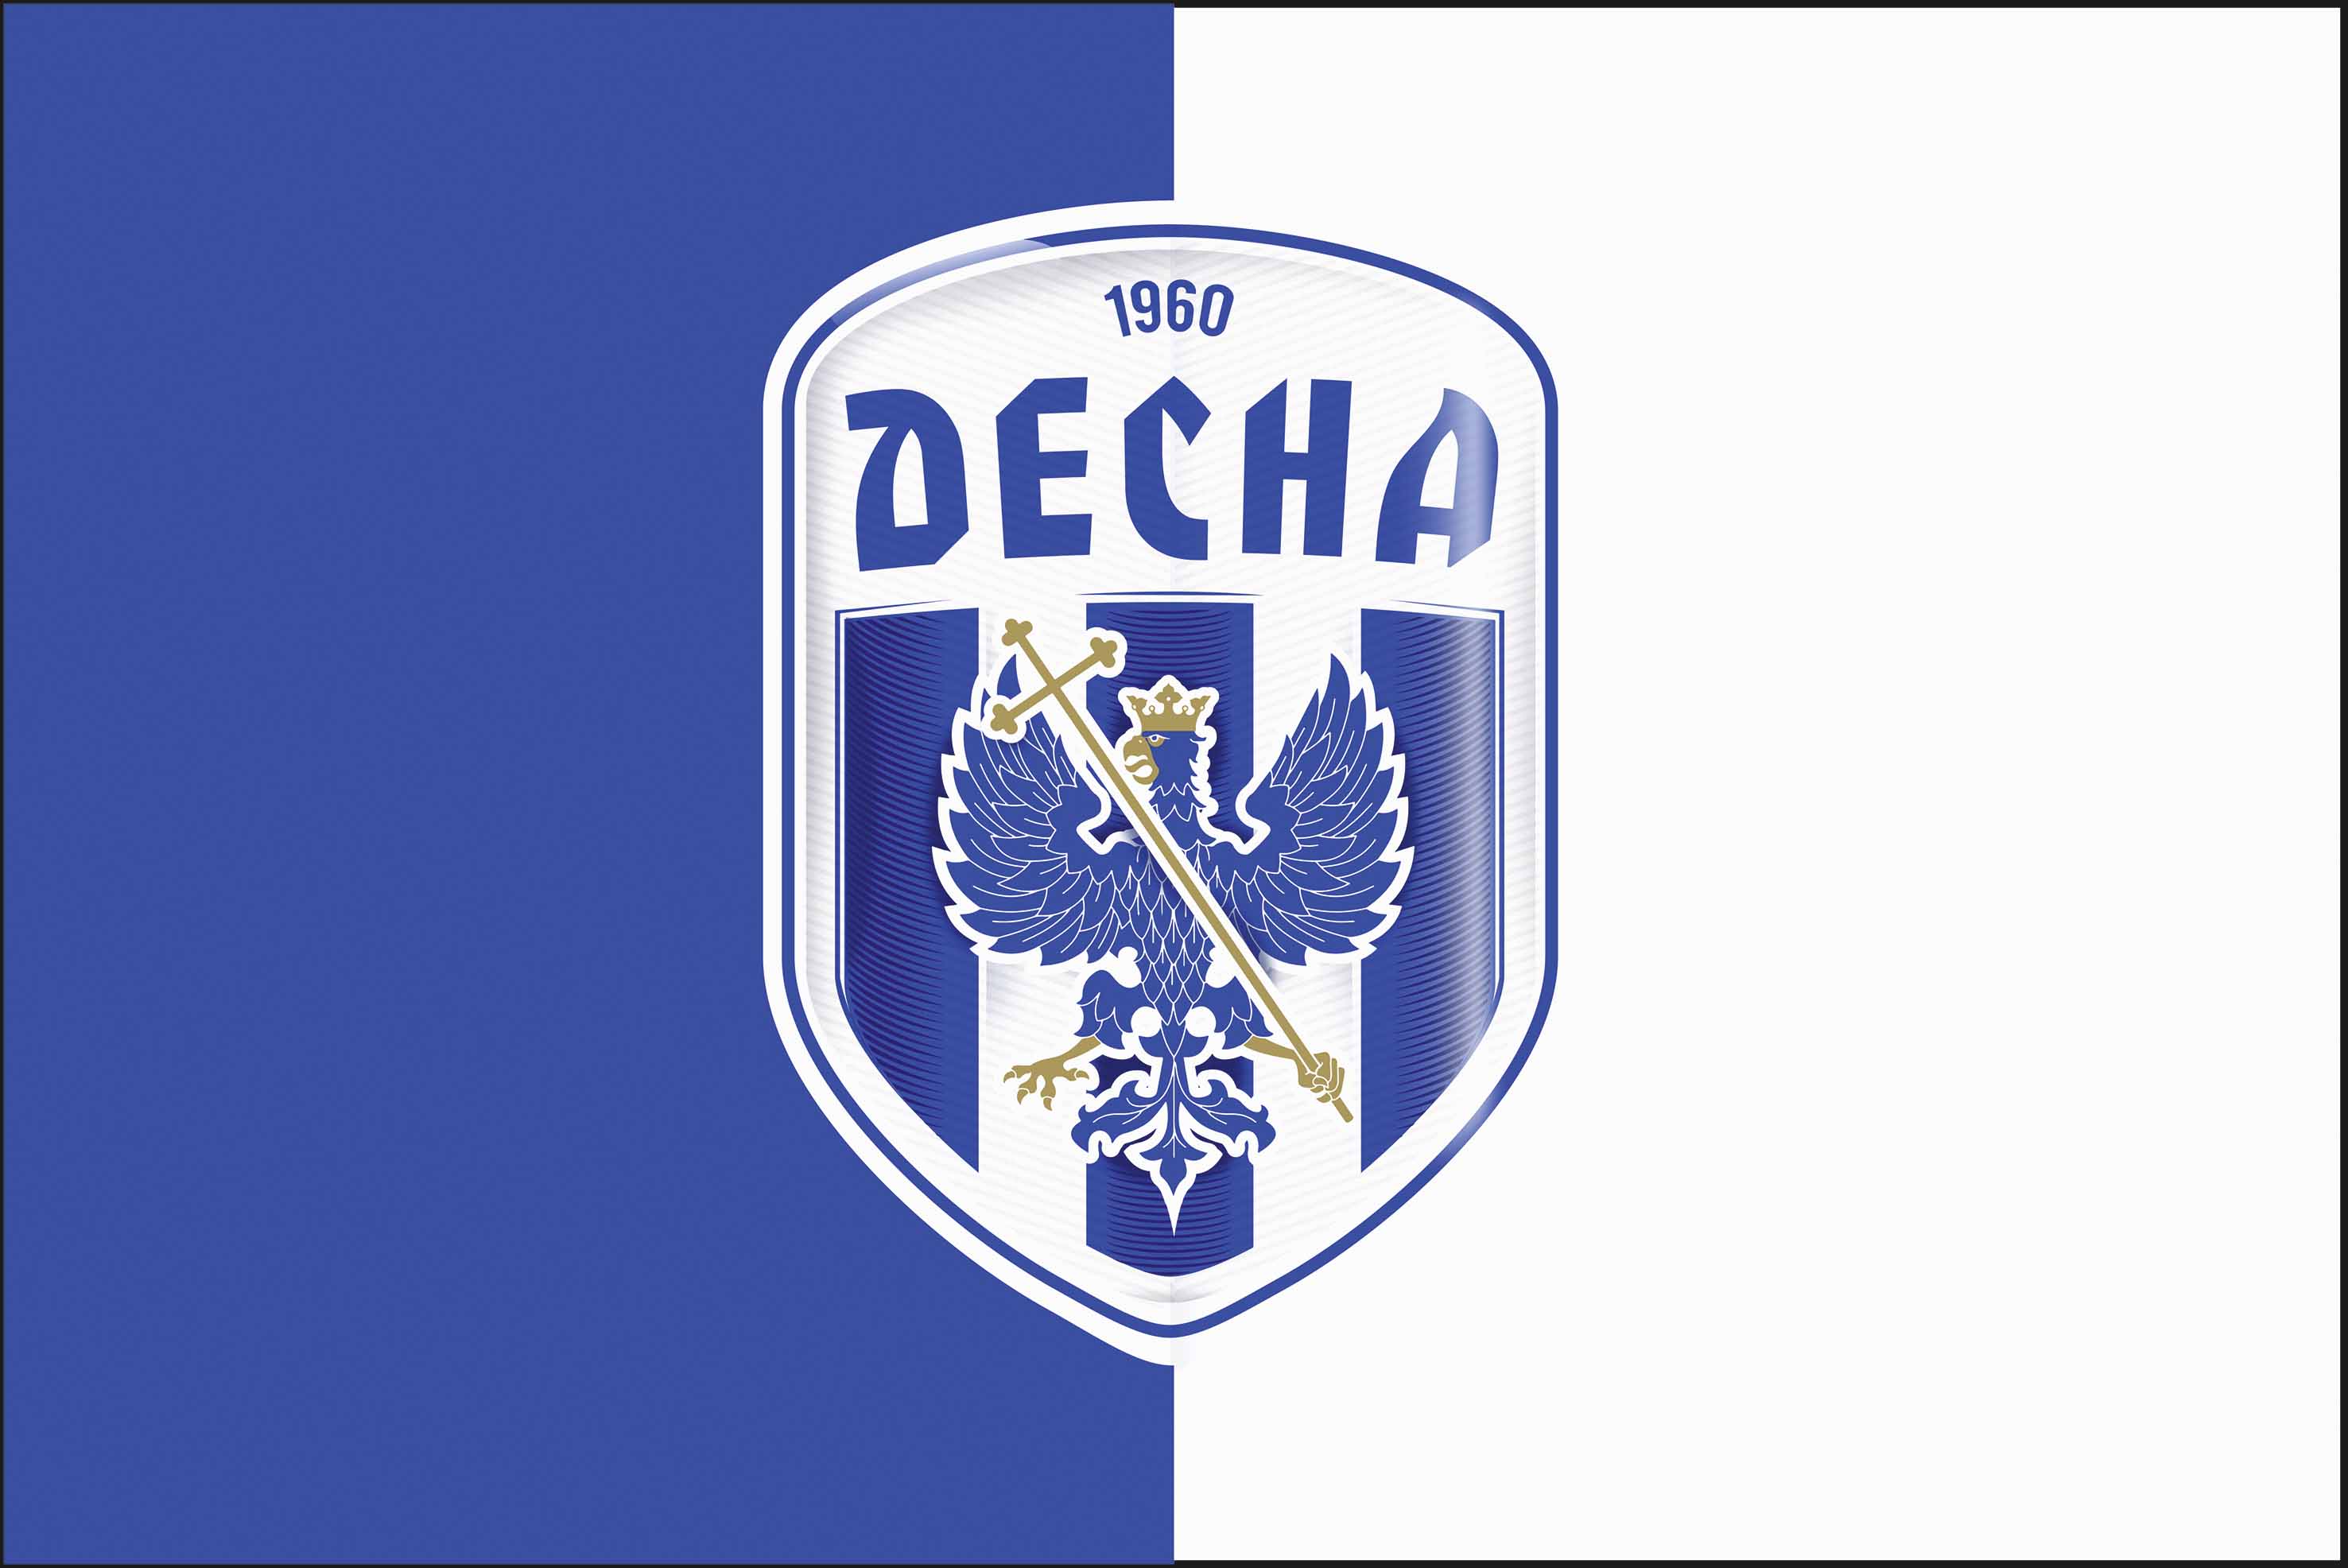 Флаг ФК Десна - 1